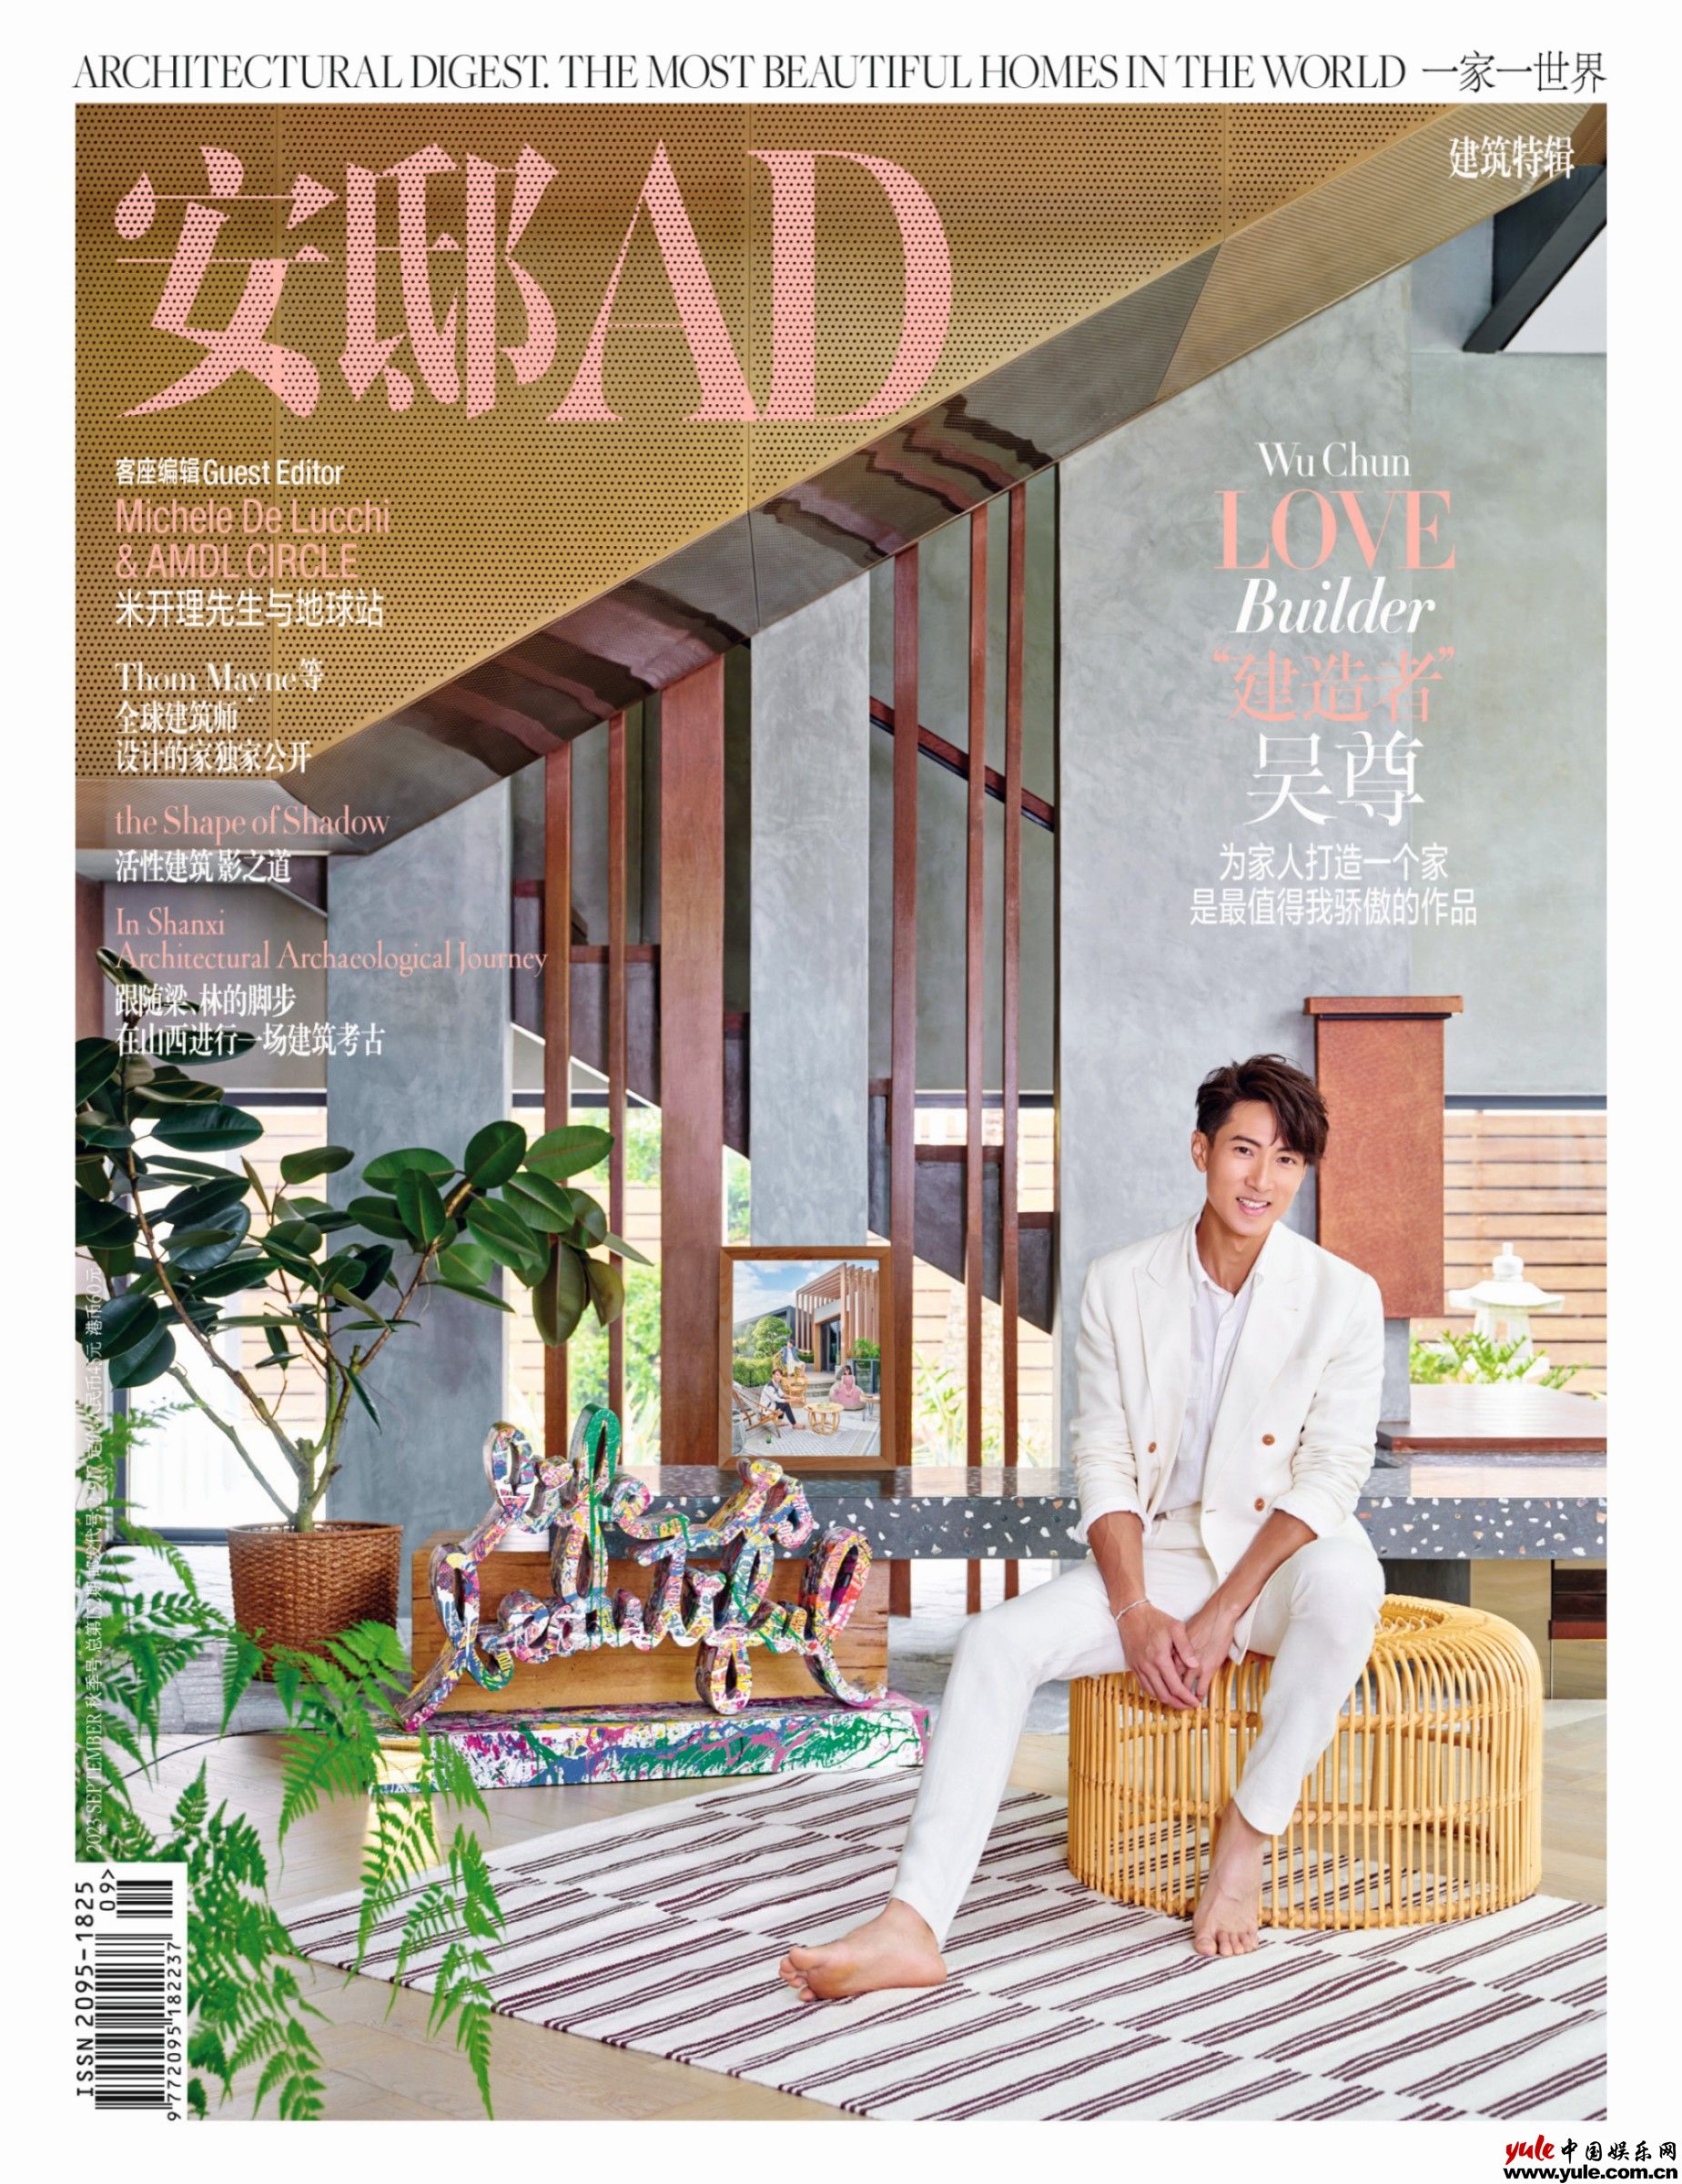 《安邸AD》九月秋季刊封面释出  “建造者”吴尊为家人打造爱的家园